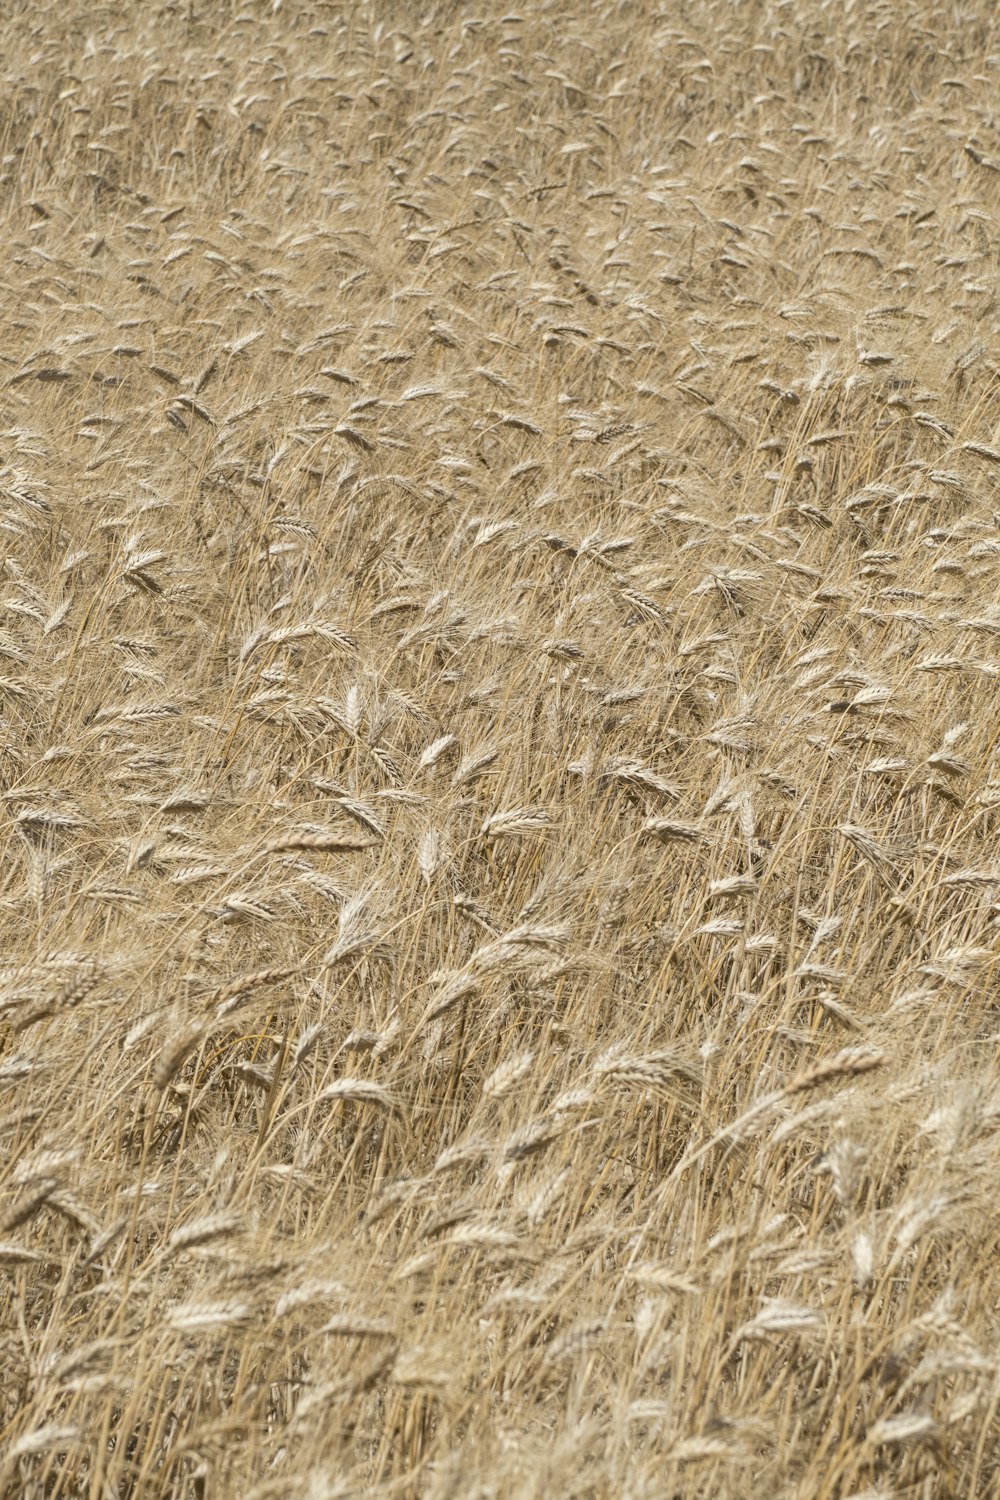 brown wheat fields